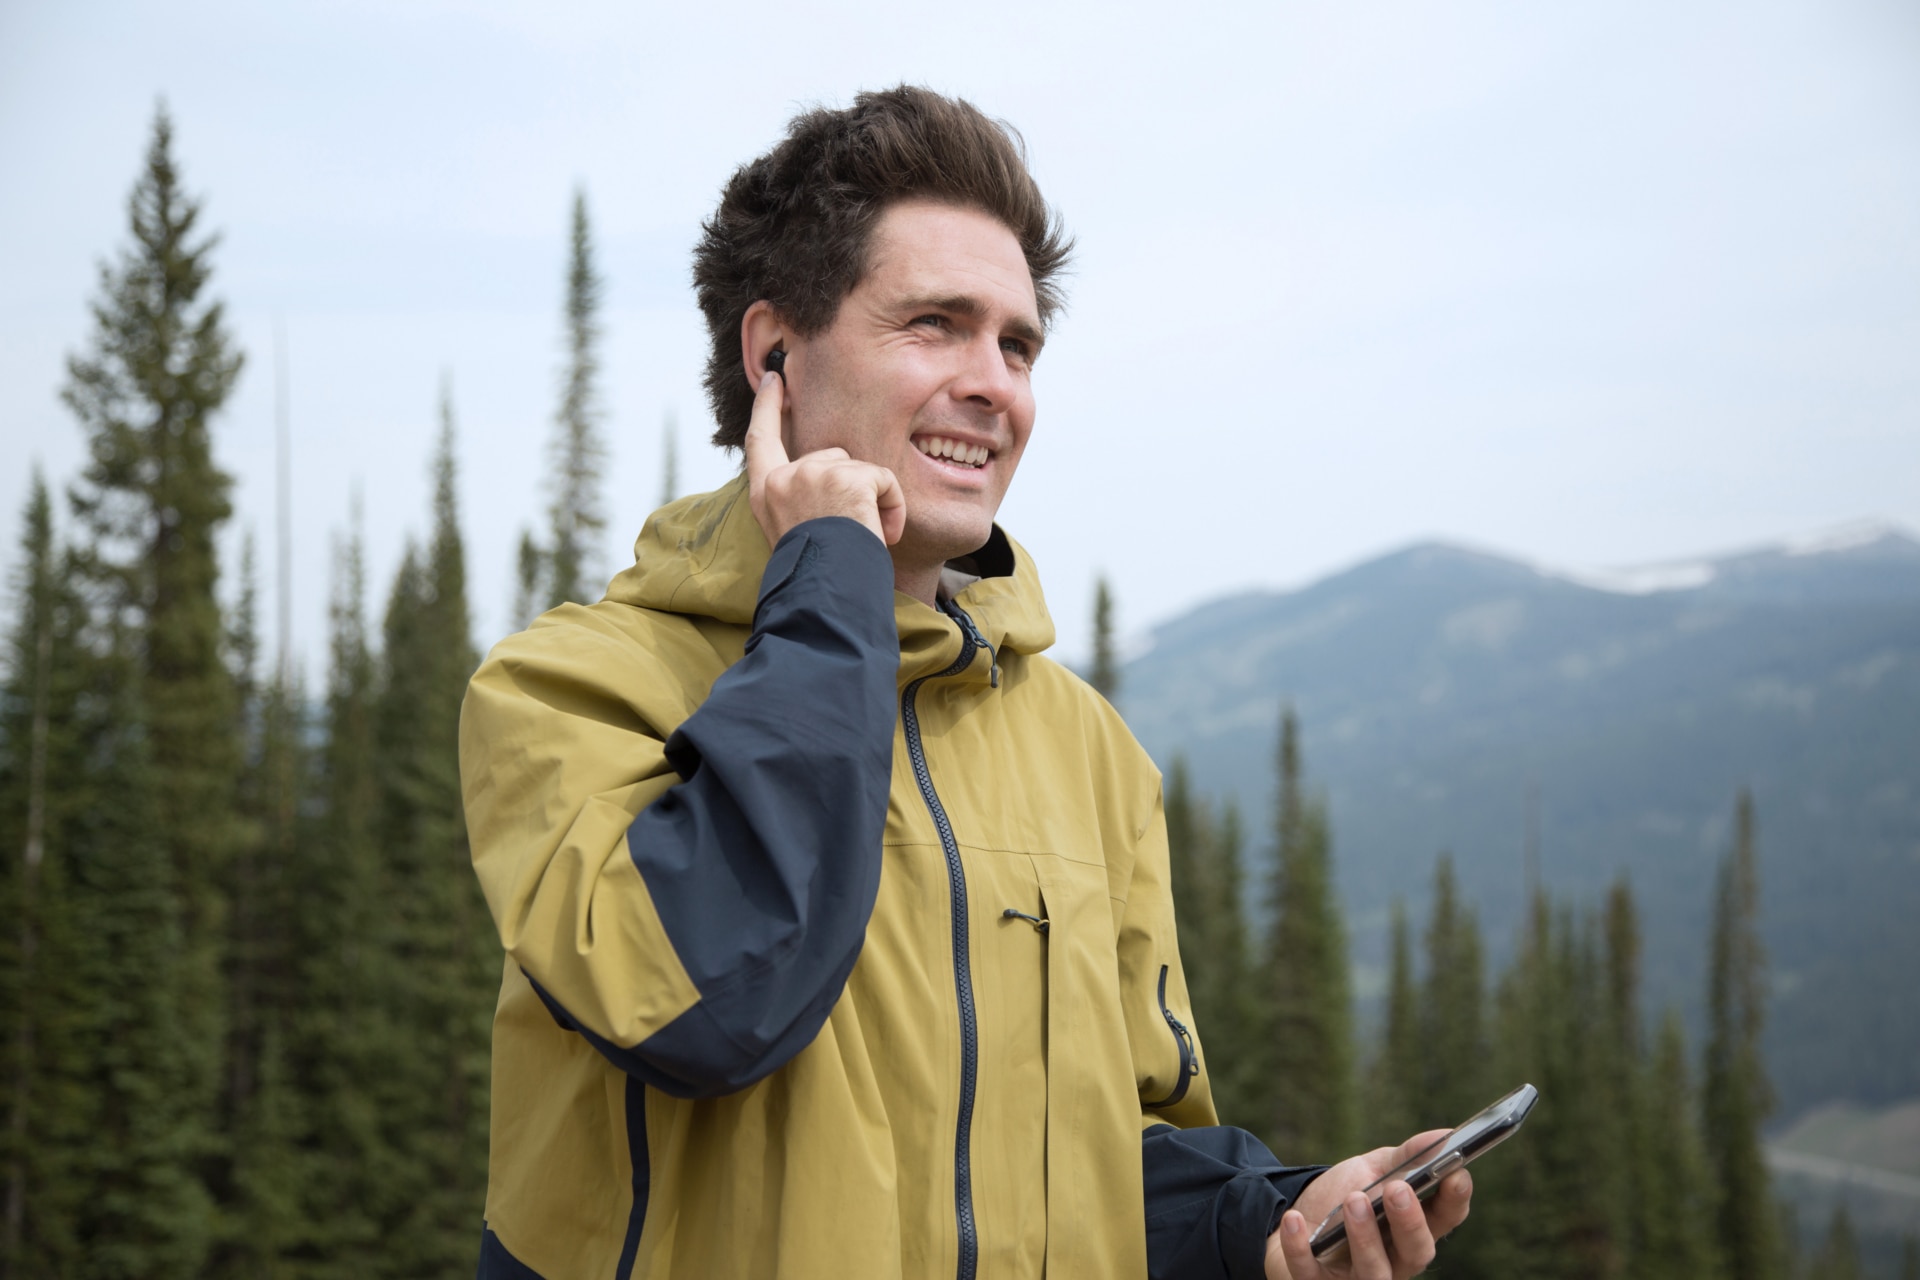 Mann med Virto Marvel-høreapparat som holder smarttelefon i hånden og fører en samtale – i et fjellandskap.